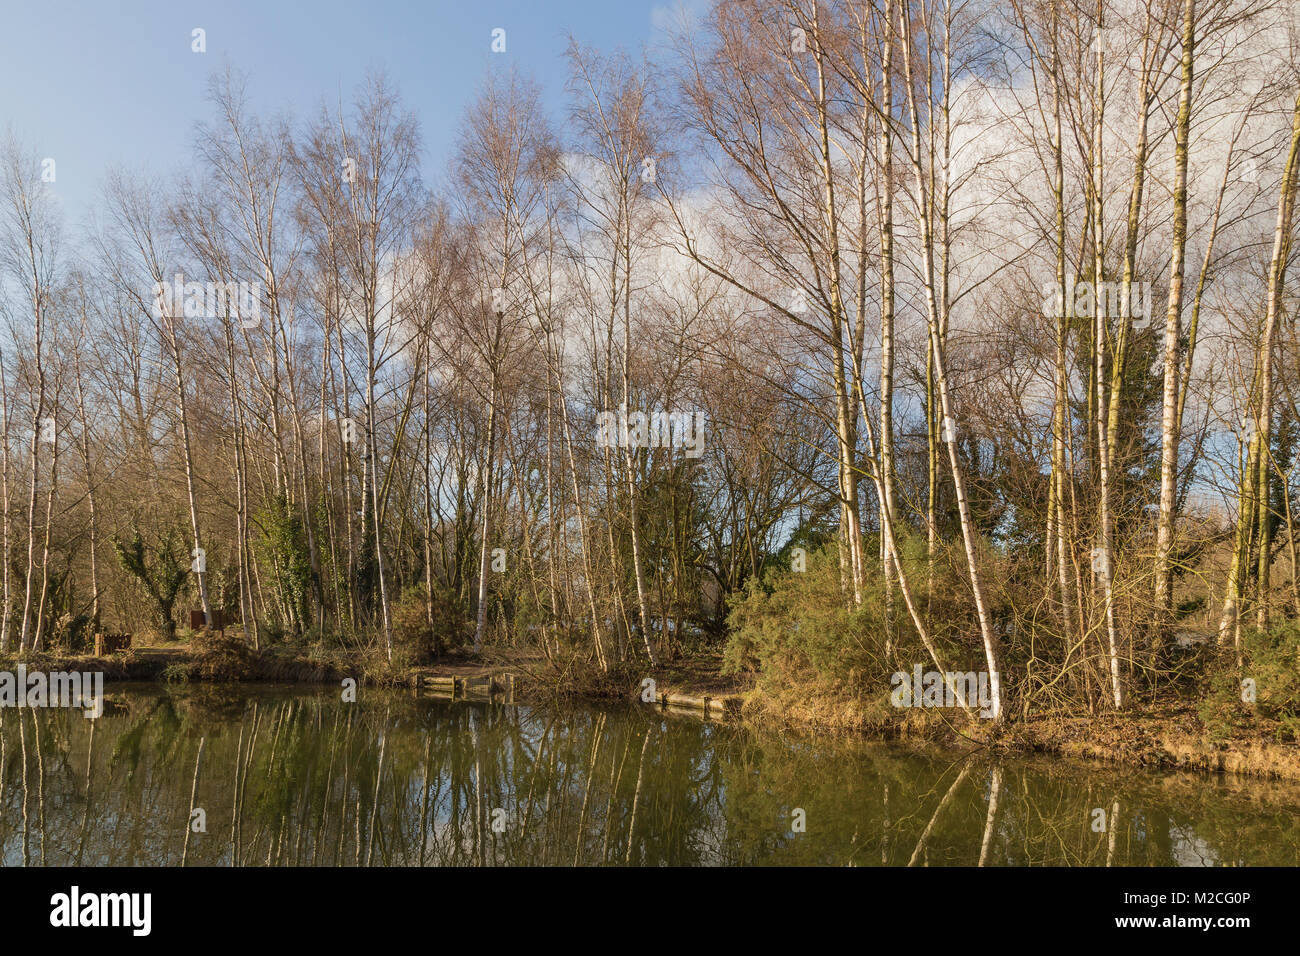 Groupe d'arbres de bouleau verruqueux autour d'un petit lac de pêche, les eaux de la Woodland, Ancaster, Lincolnshire. Banque D'Images